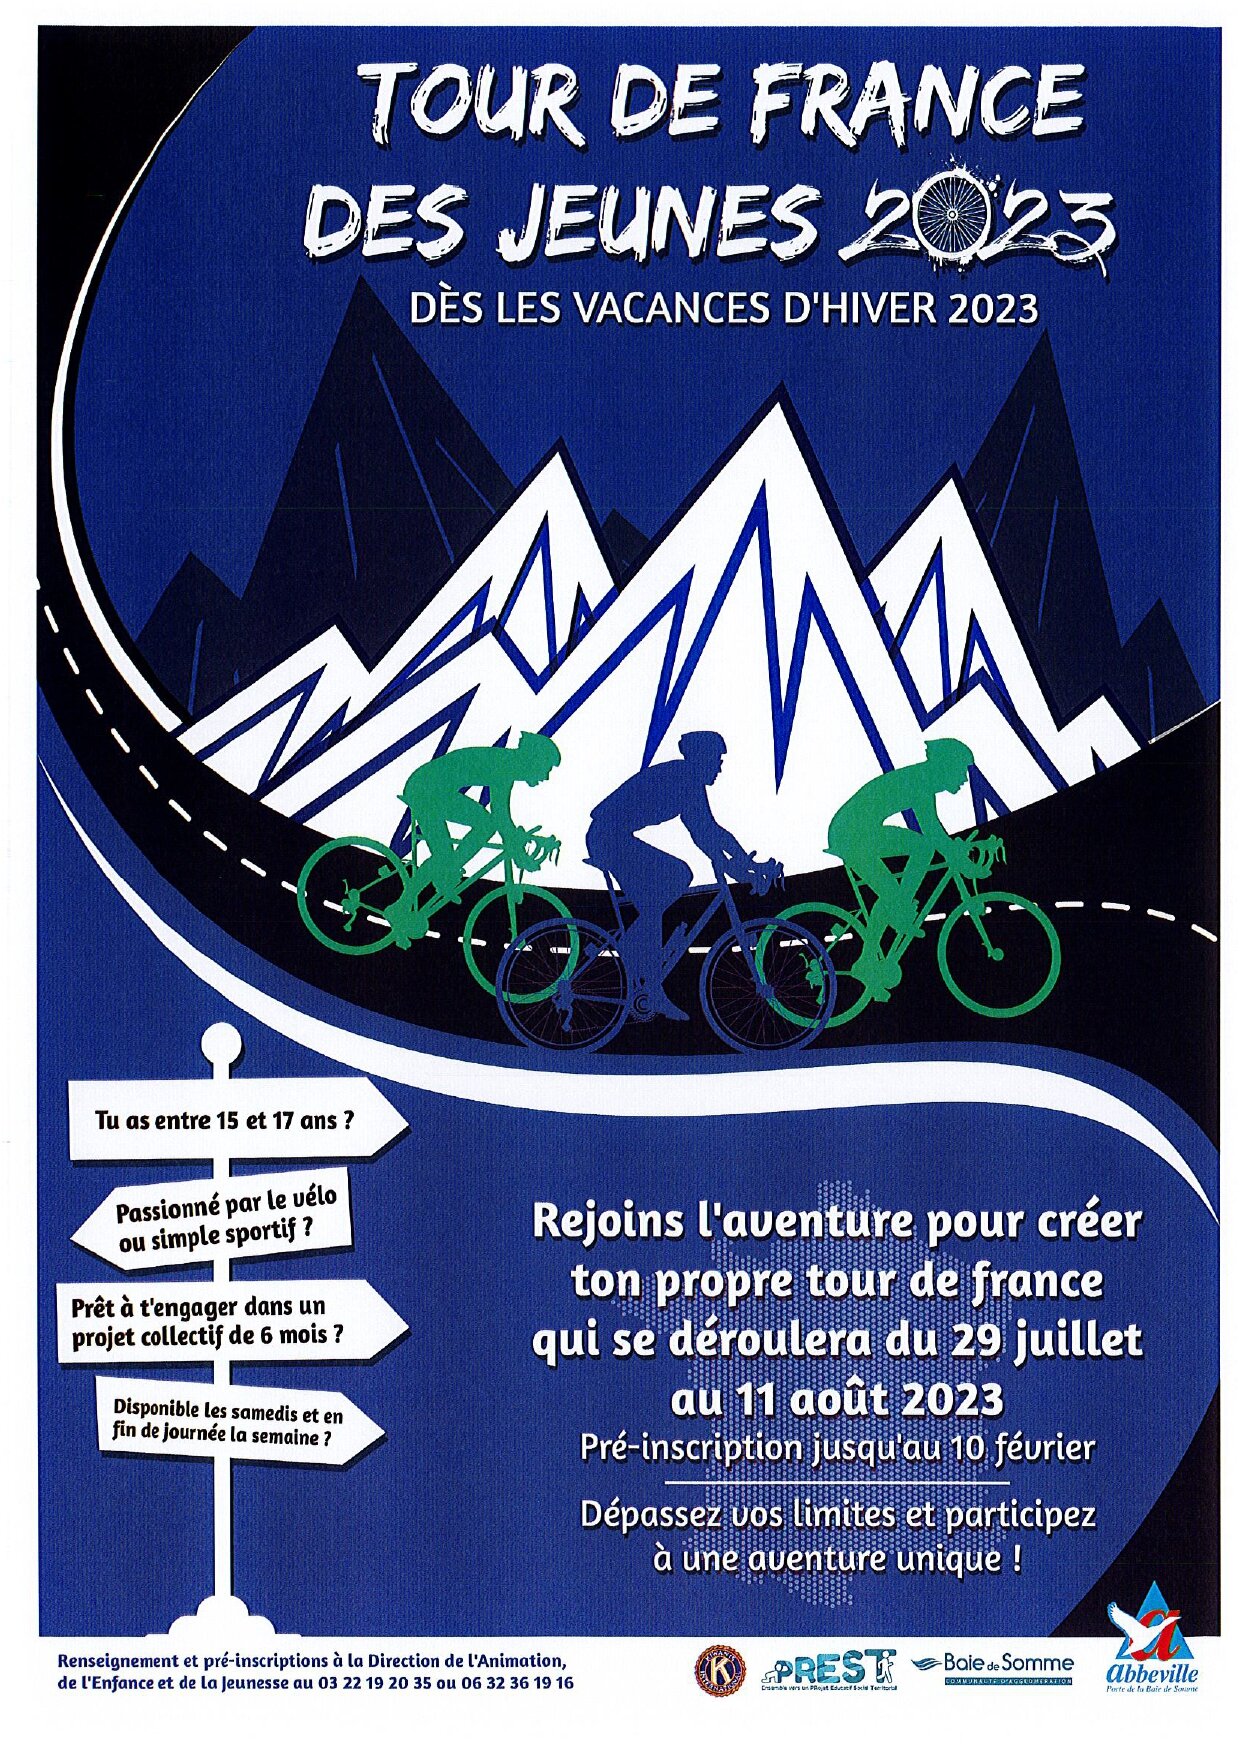 Tour_de_France_des_jeunes_2023.jpg